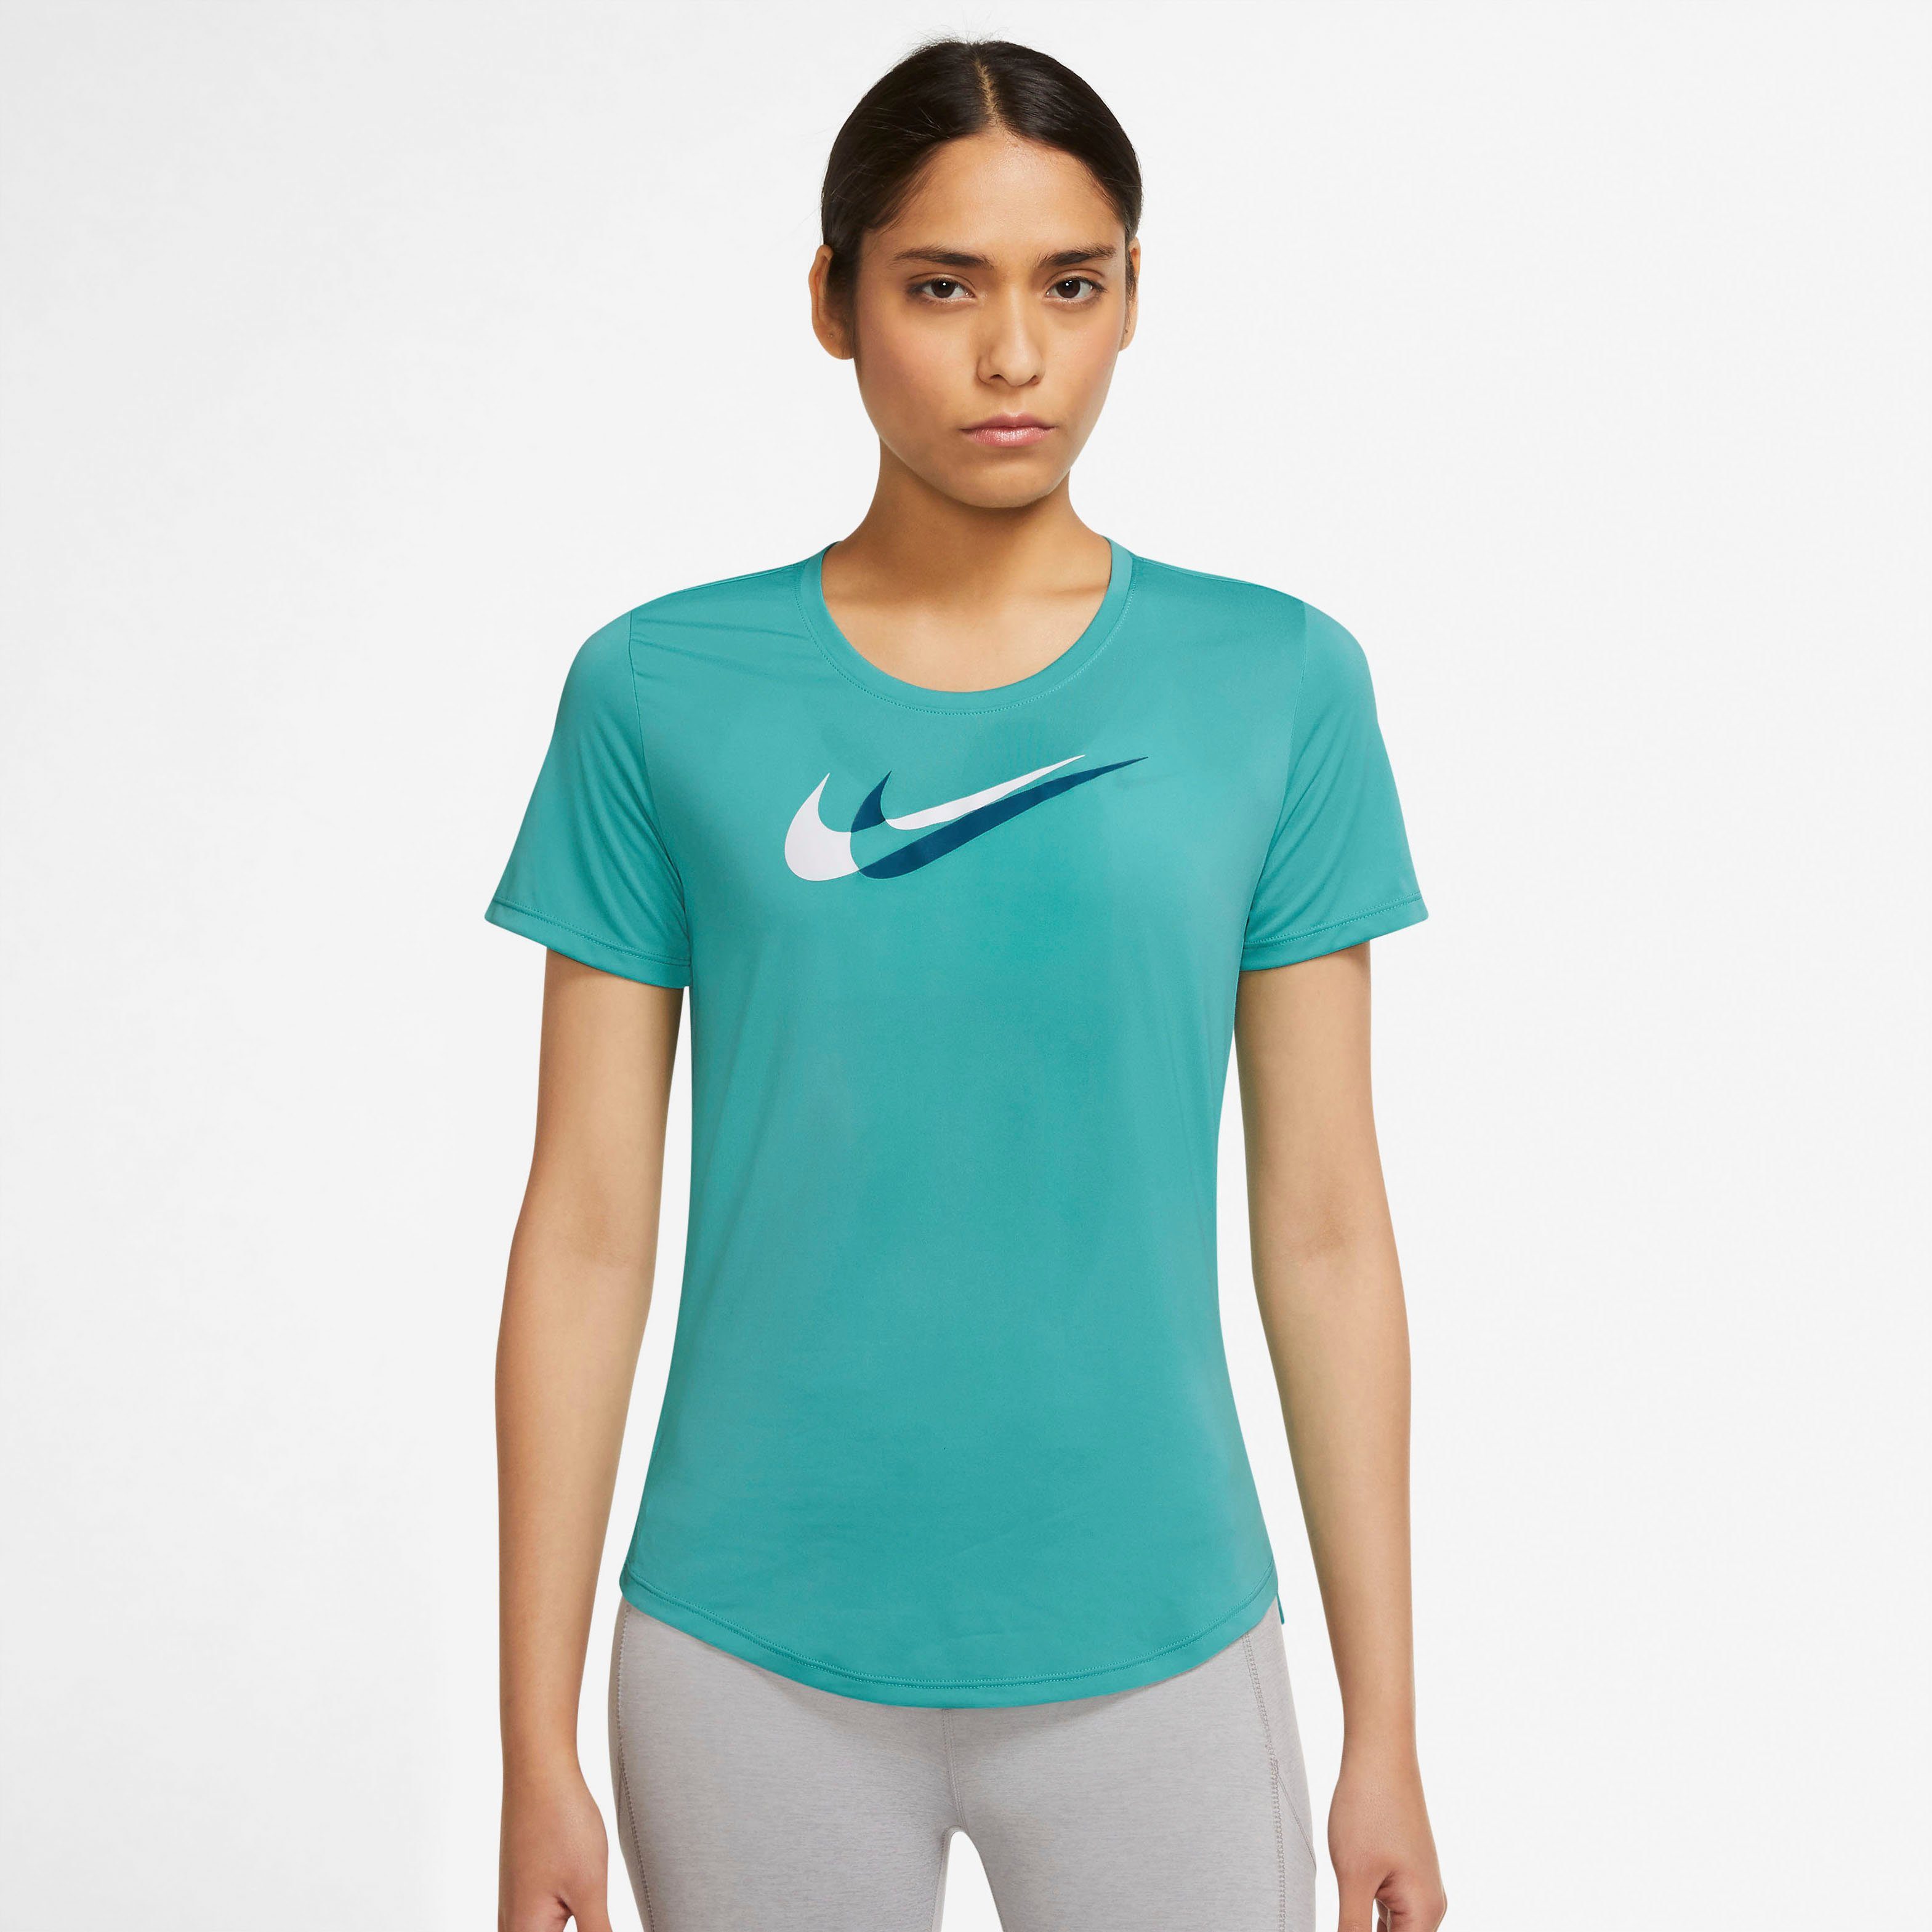 Nike Sportshirts online kaufen | OTTO